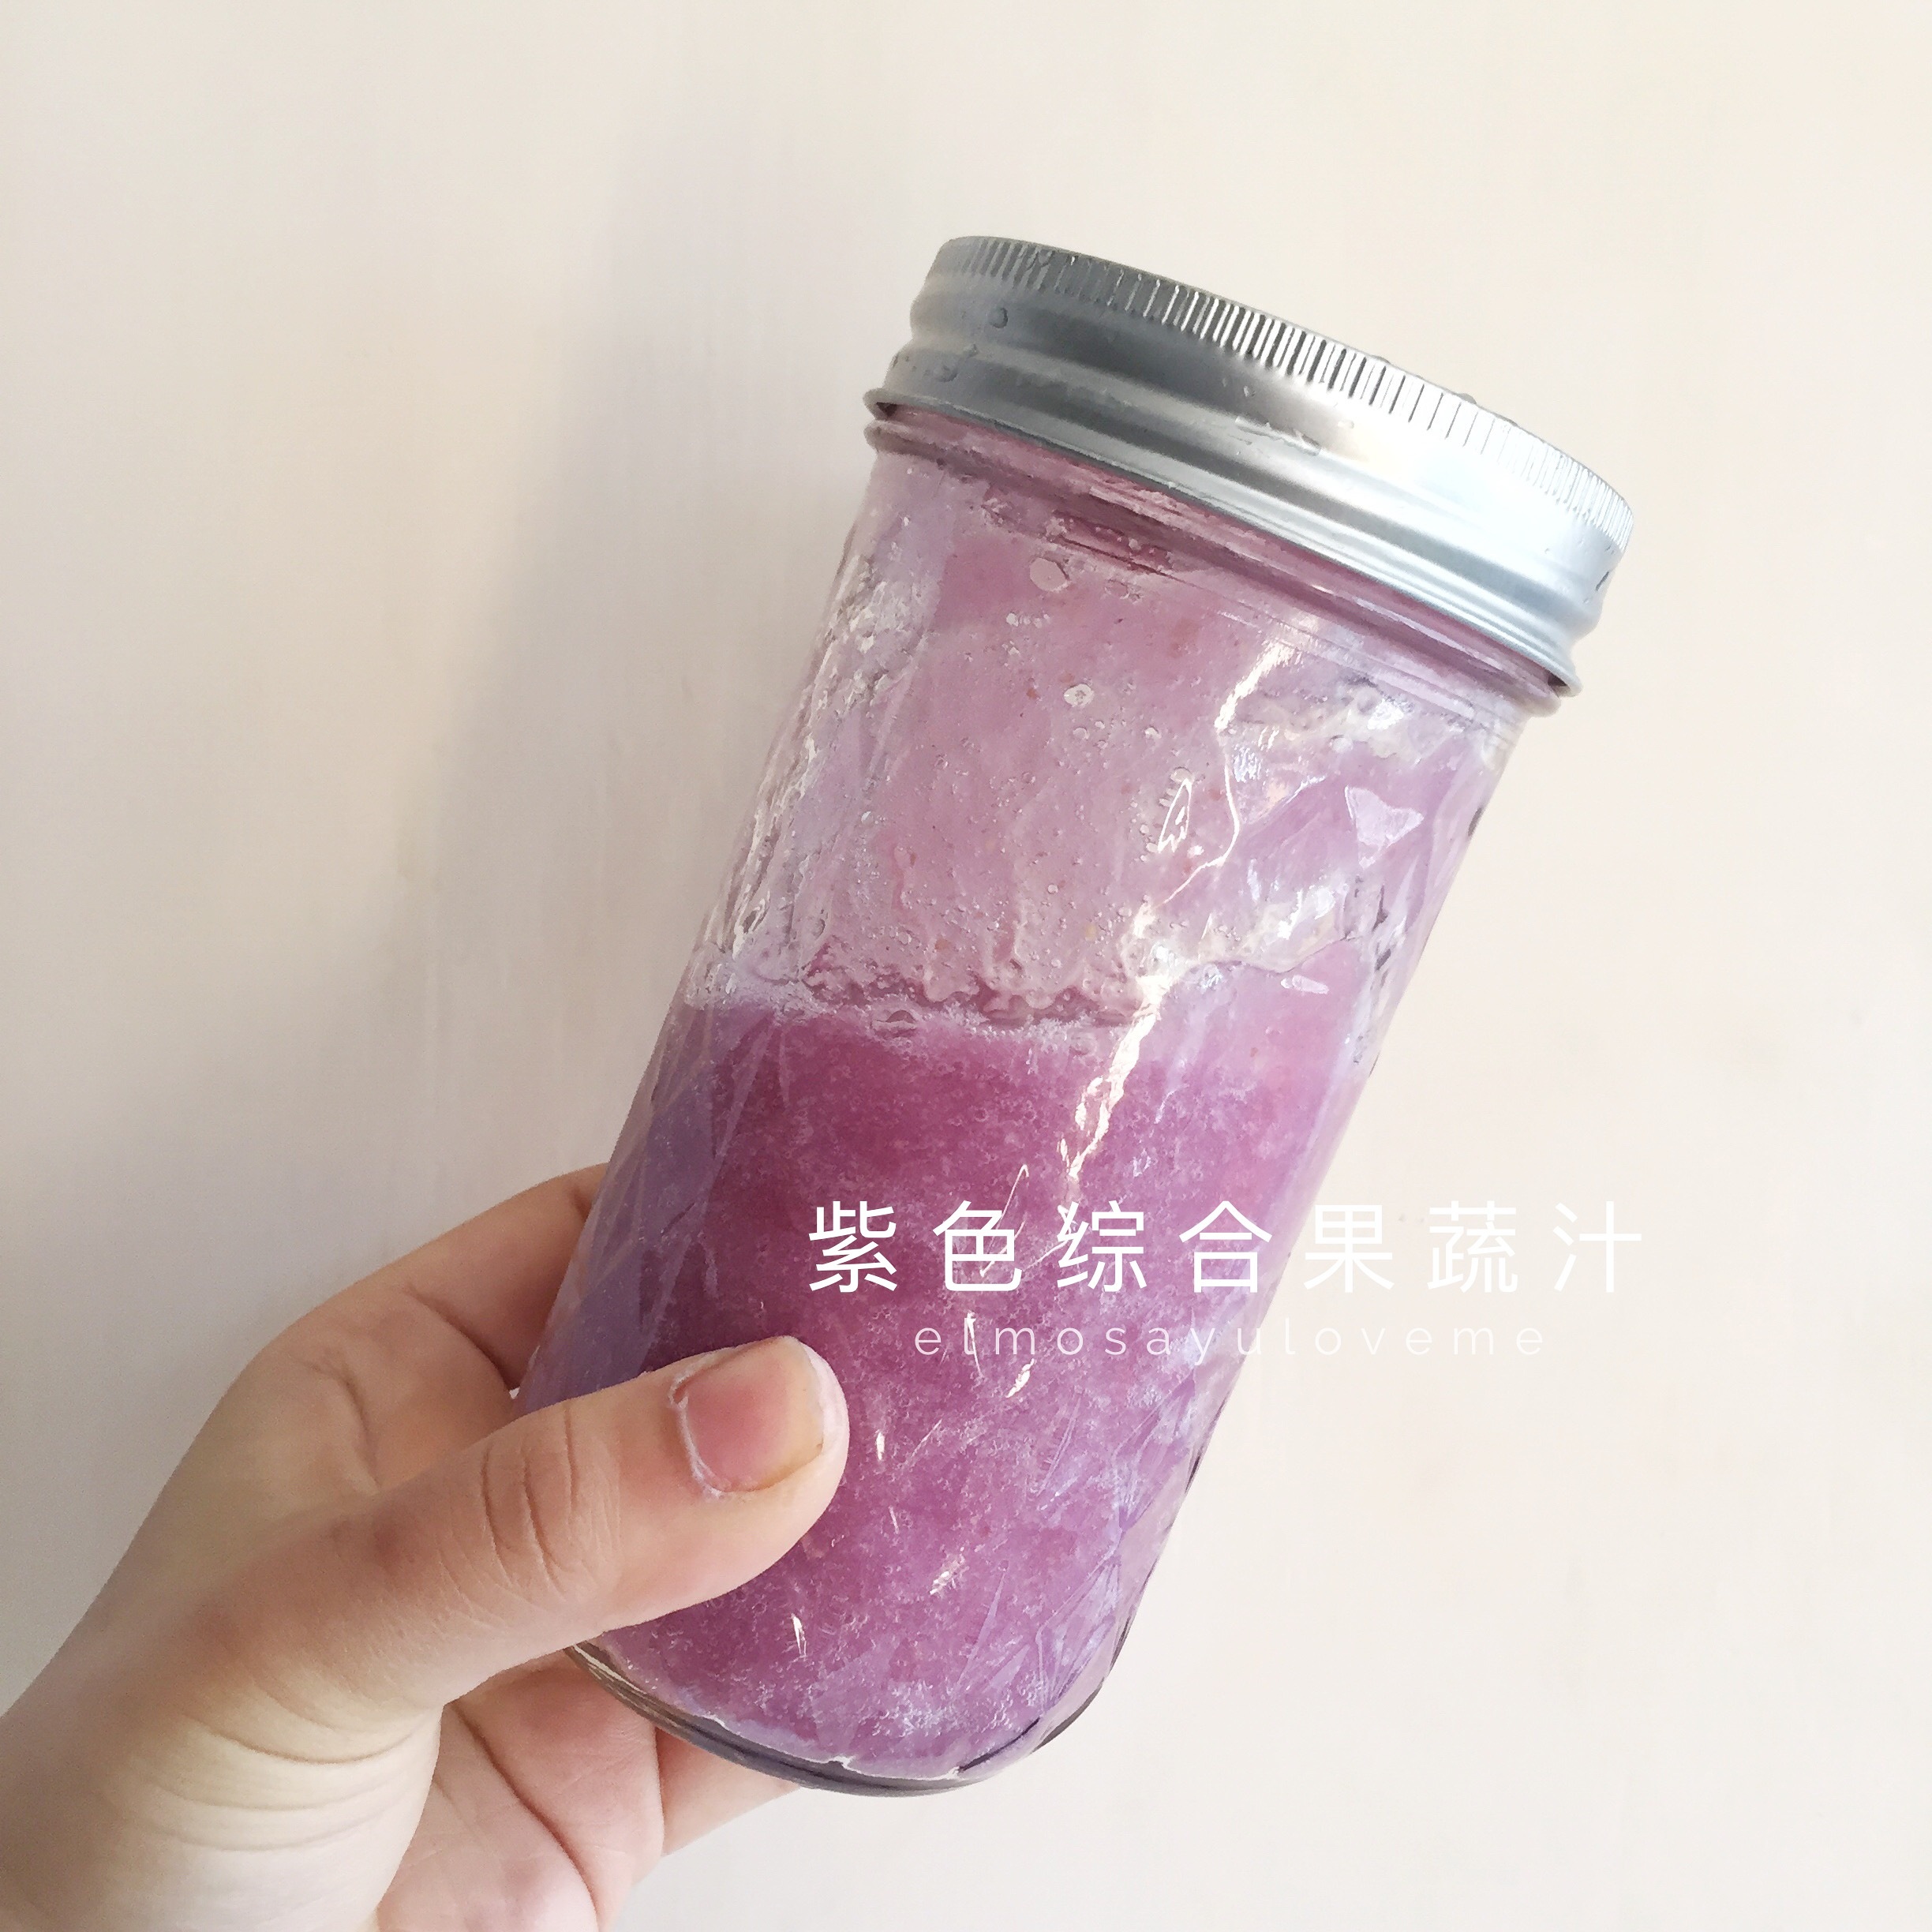 紫色综合蔬果昔-purple-紫甘蓝水梨汁